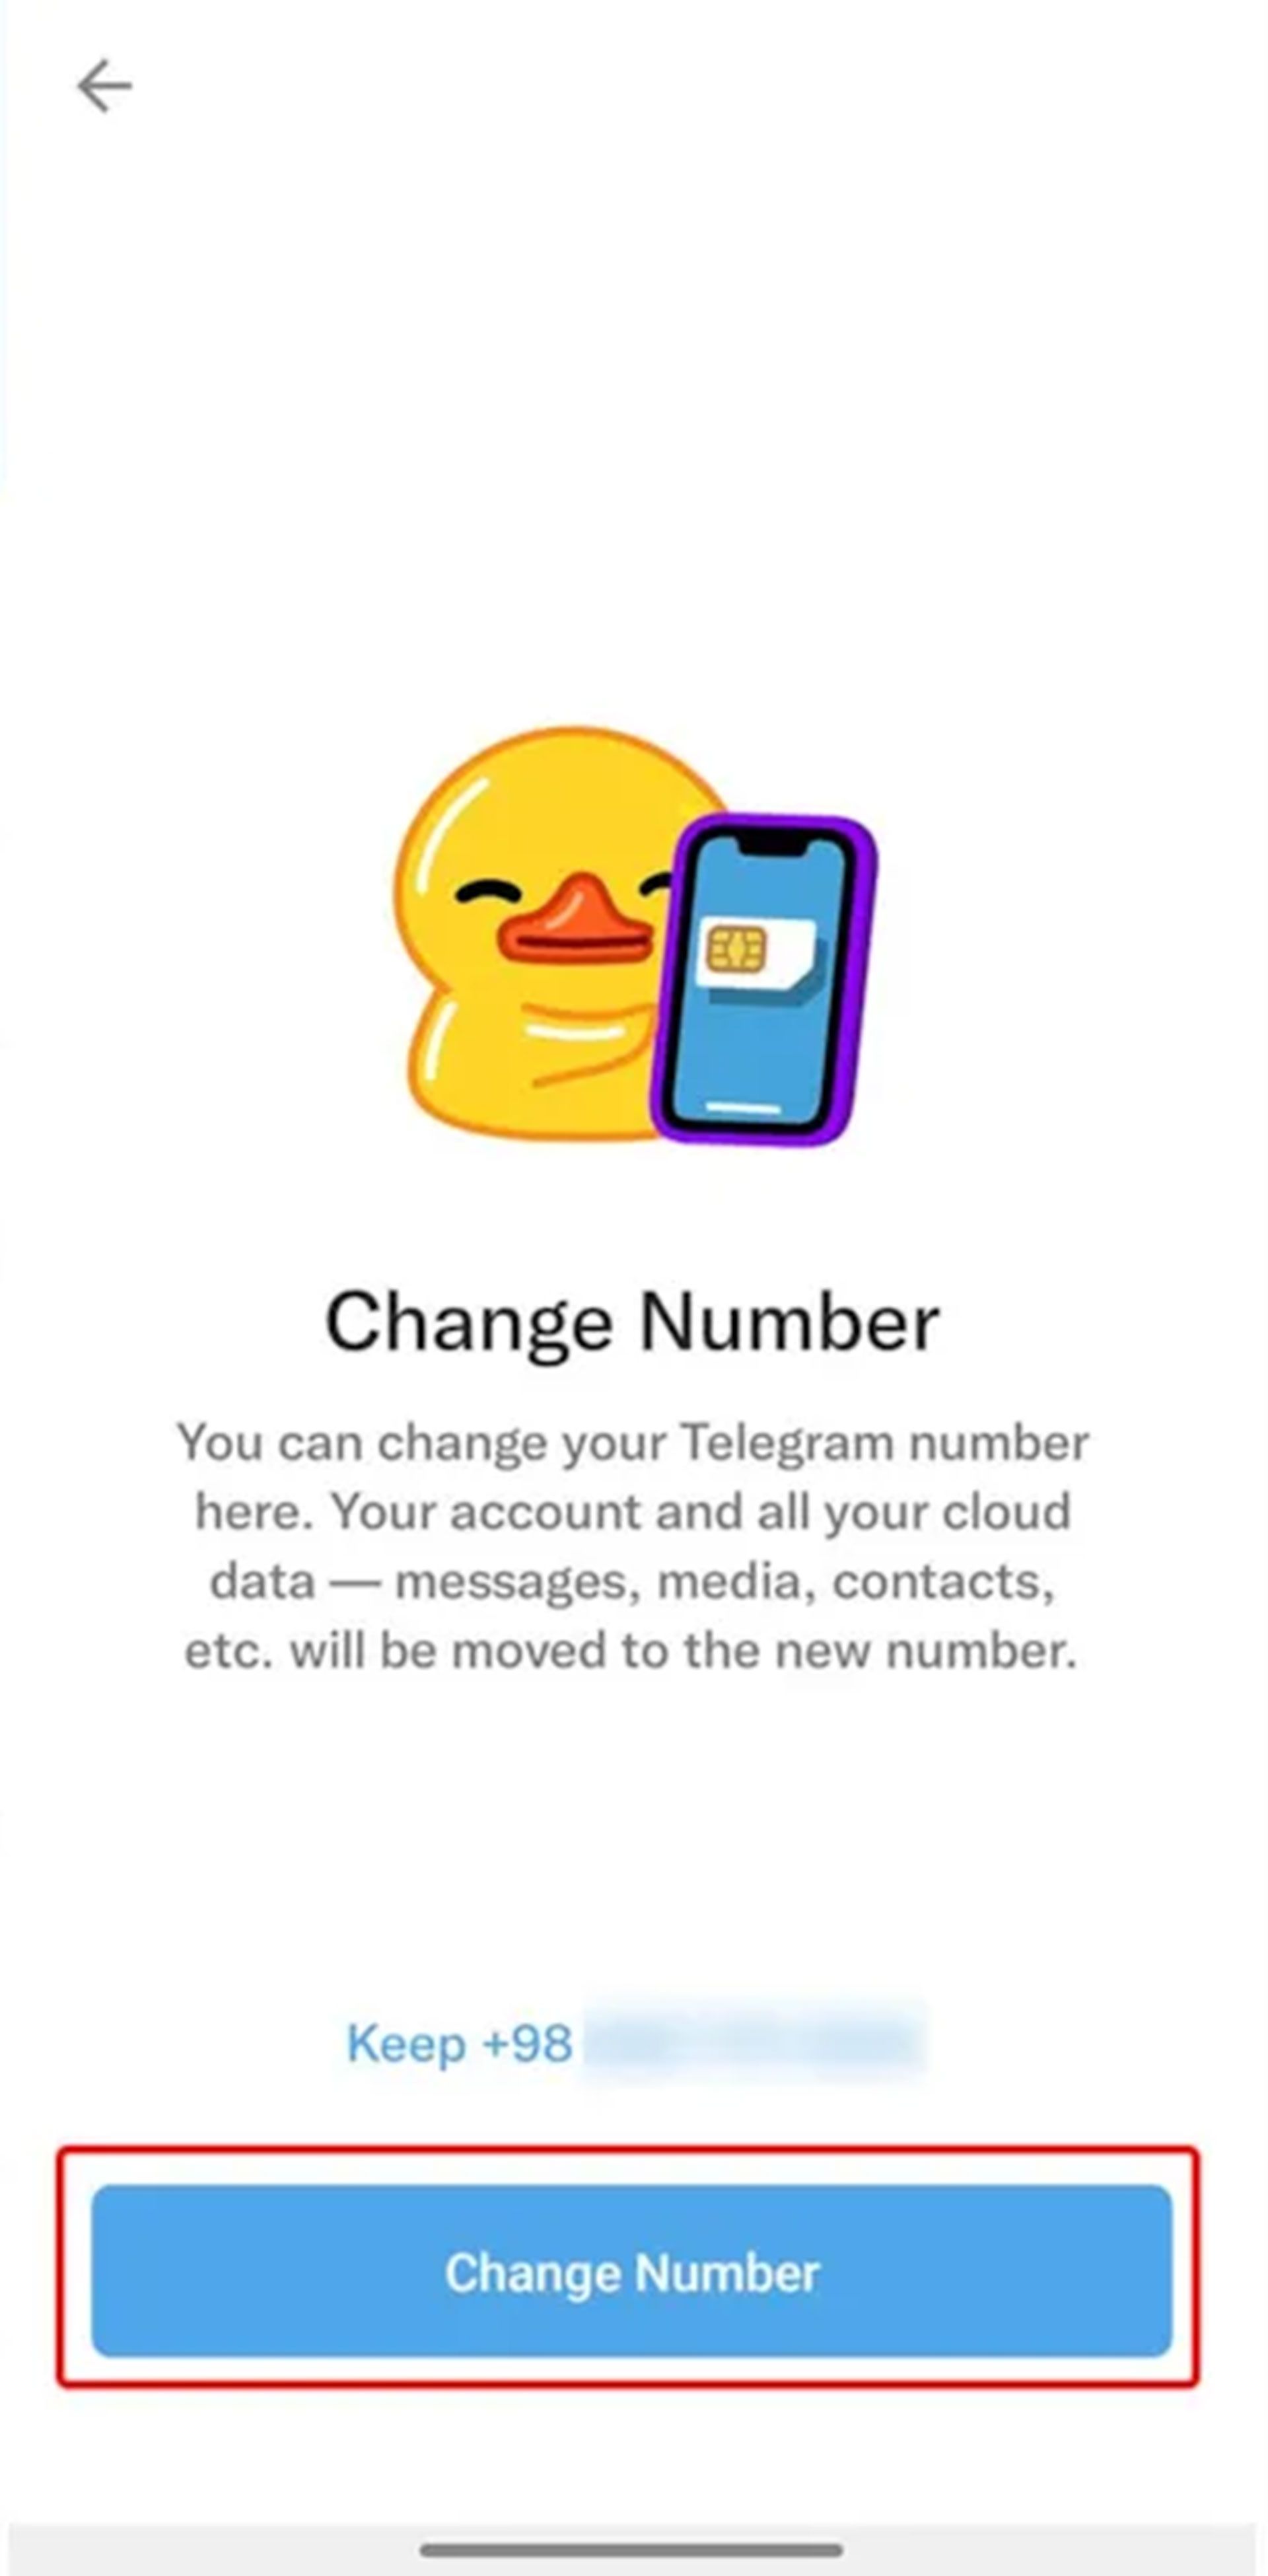 صفحه بررسی شماره تلفن تلگرام